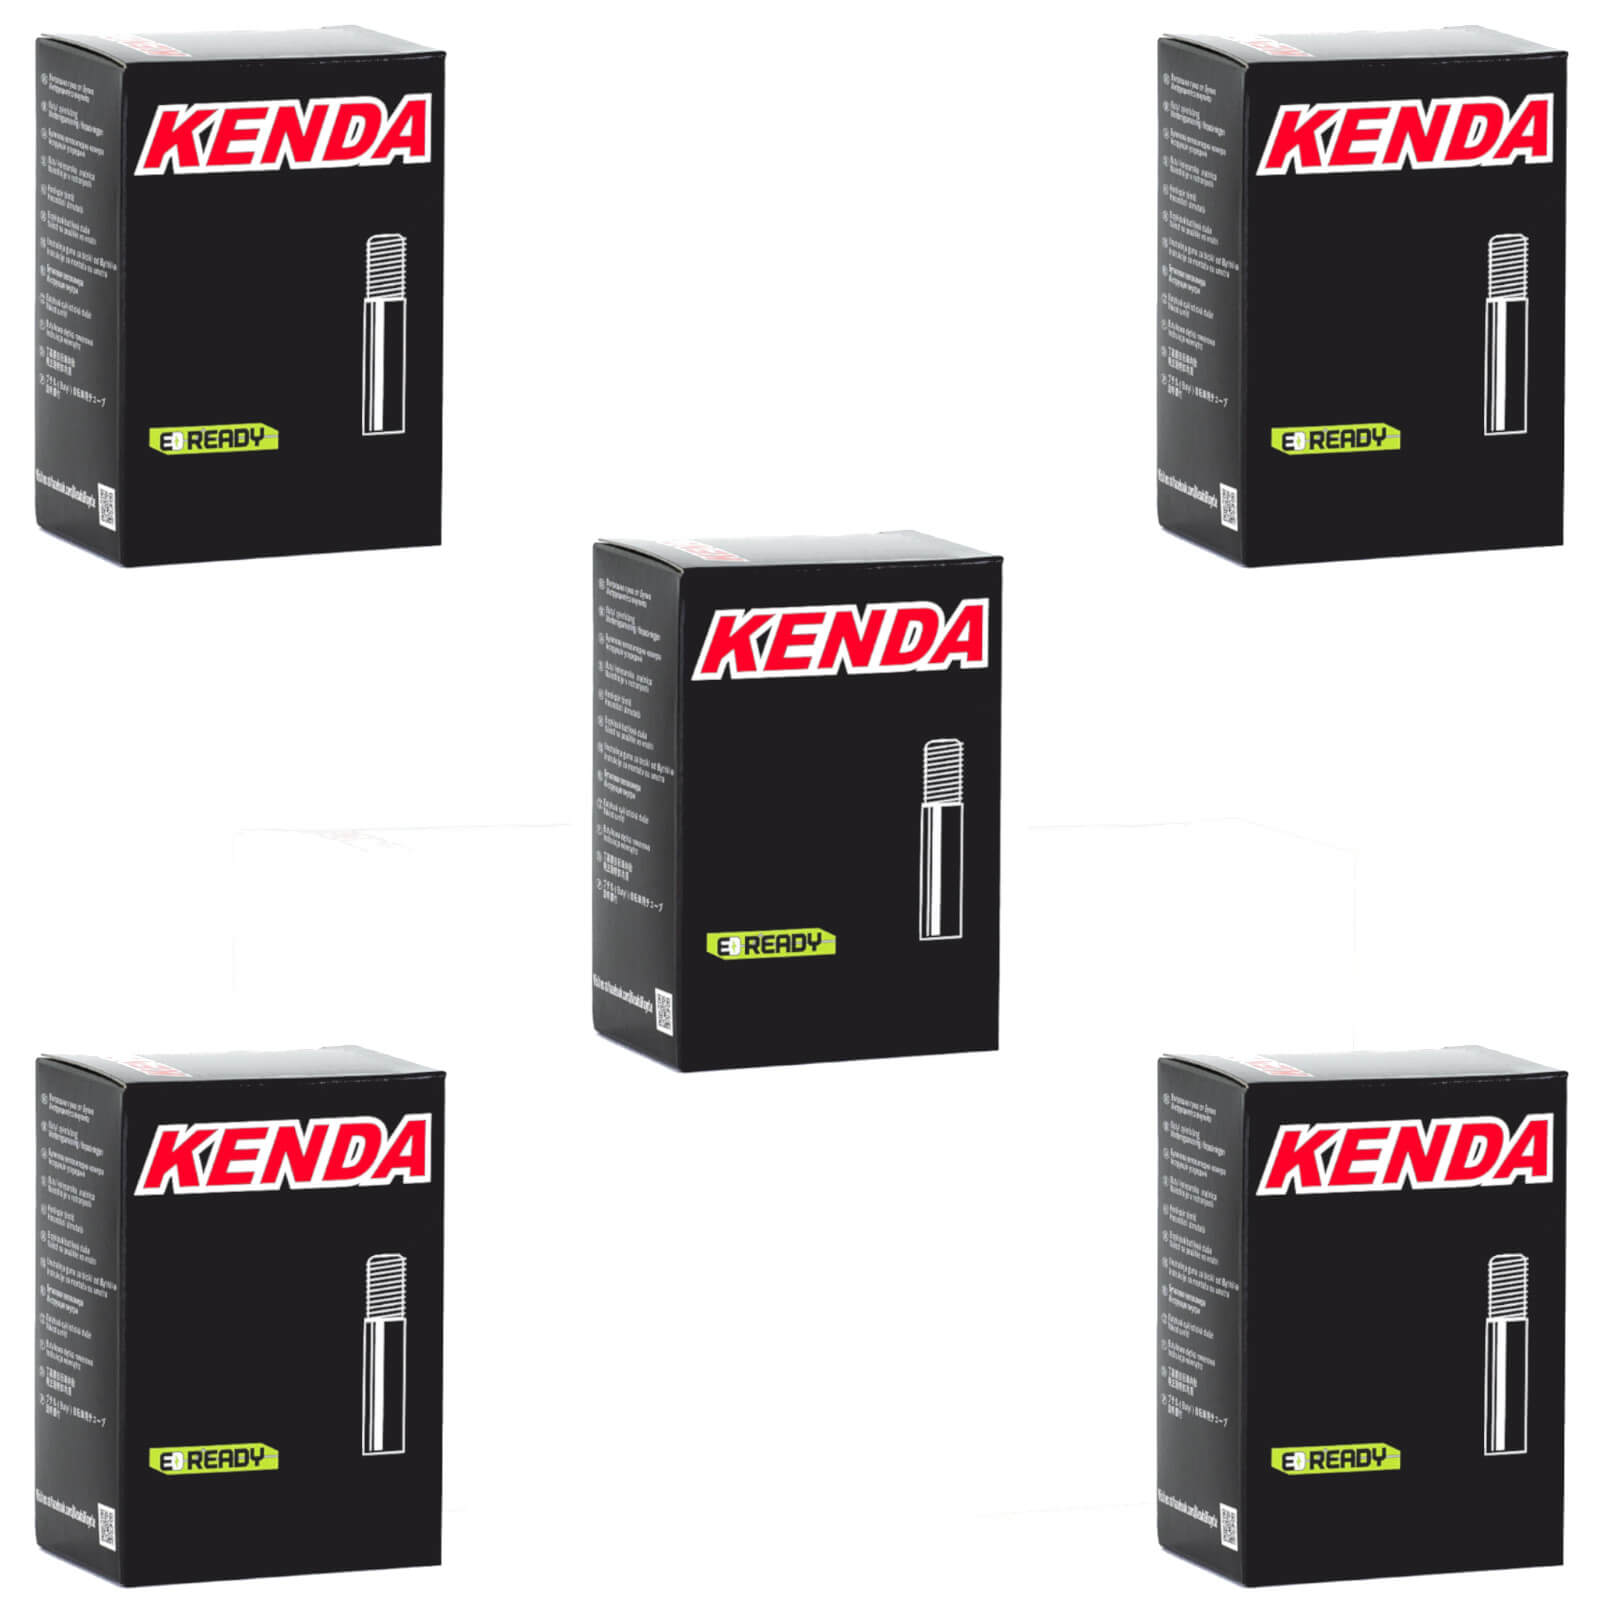 Kenda 26x2.4-2.8" 26 Inch Schrader Valve Bike Inner Tube Pack of 5